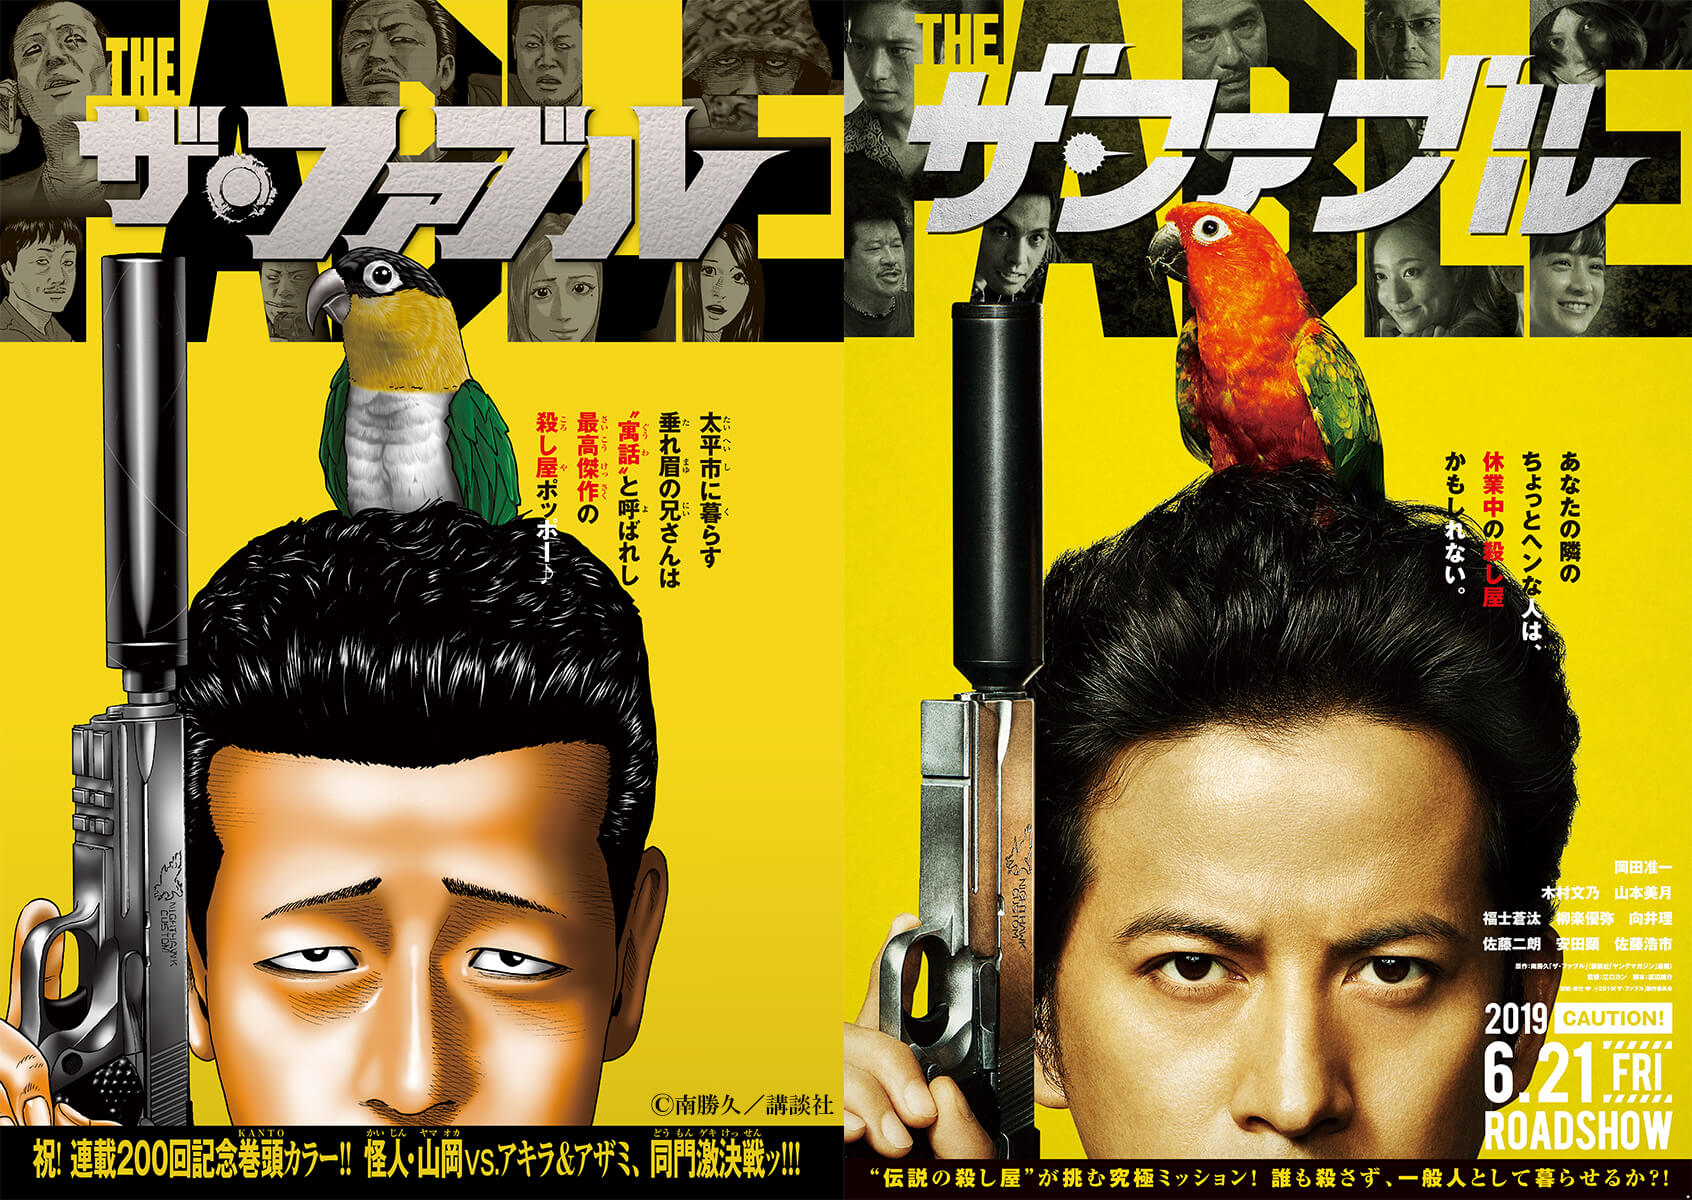 映画 ザ ファブル 原作者 南勝久先生の描き下ろしポスター公開 Moshi Moshi Nippon もしもしにっぽん